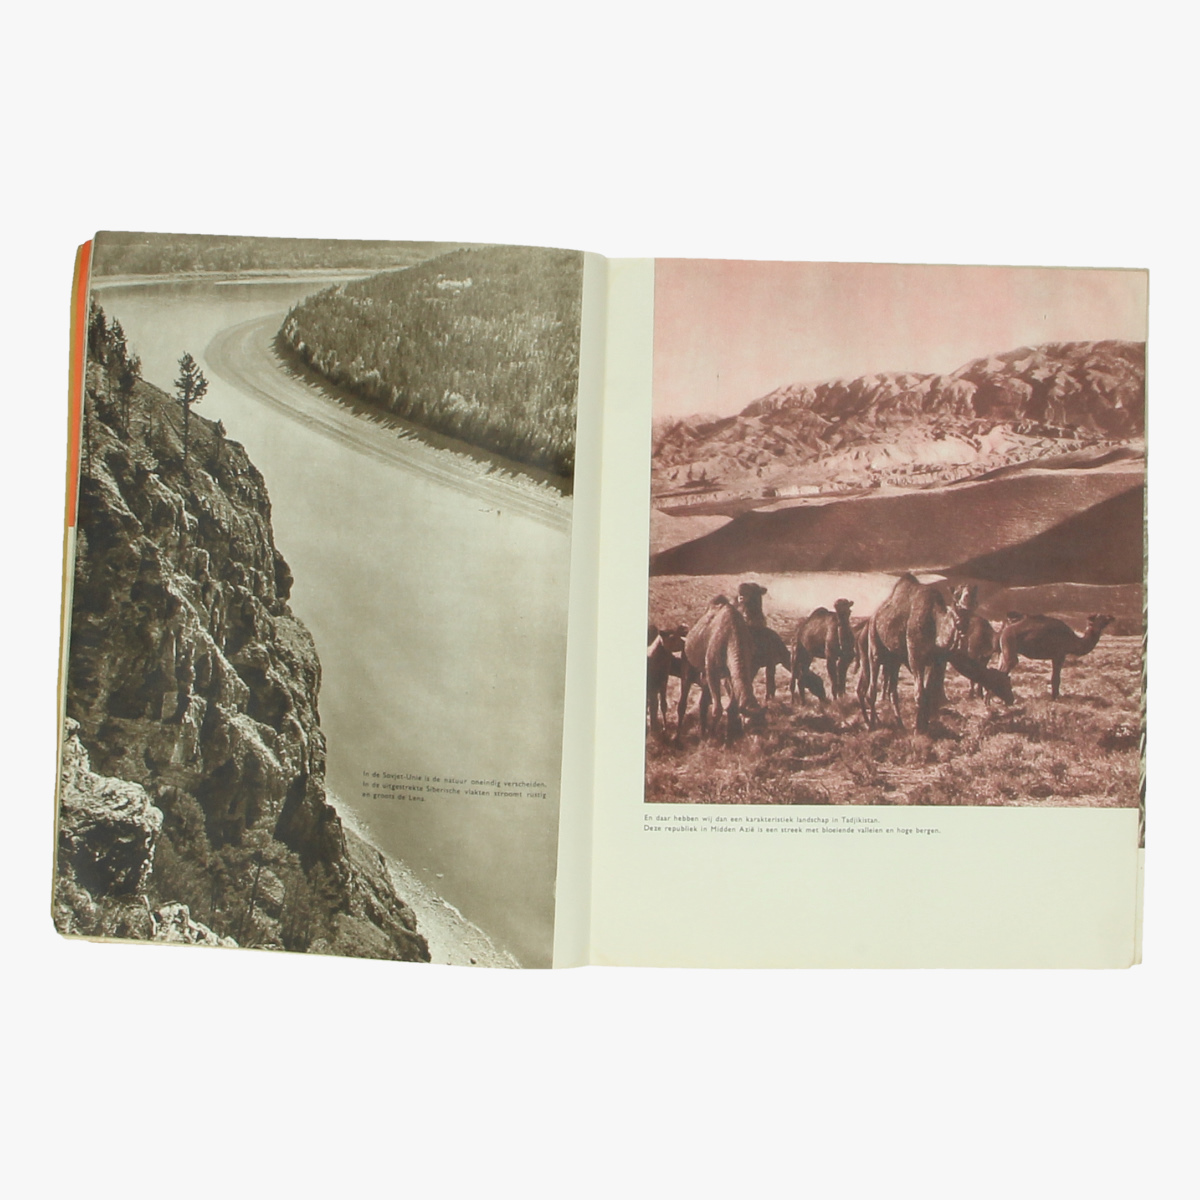 Afbeeldingen van boek ussr expo 58 de sectie der ussr op de wereldtetoonstelling 1958 te bxl